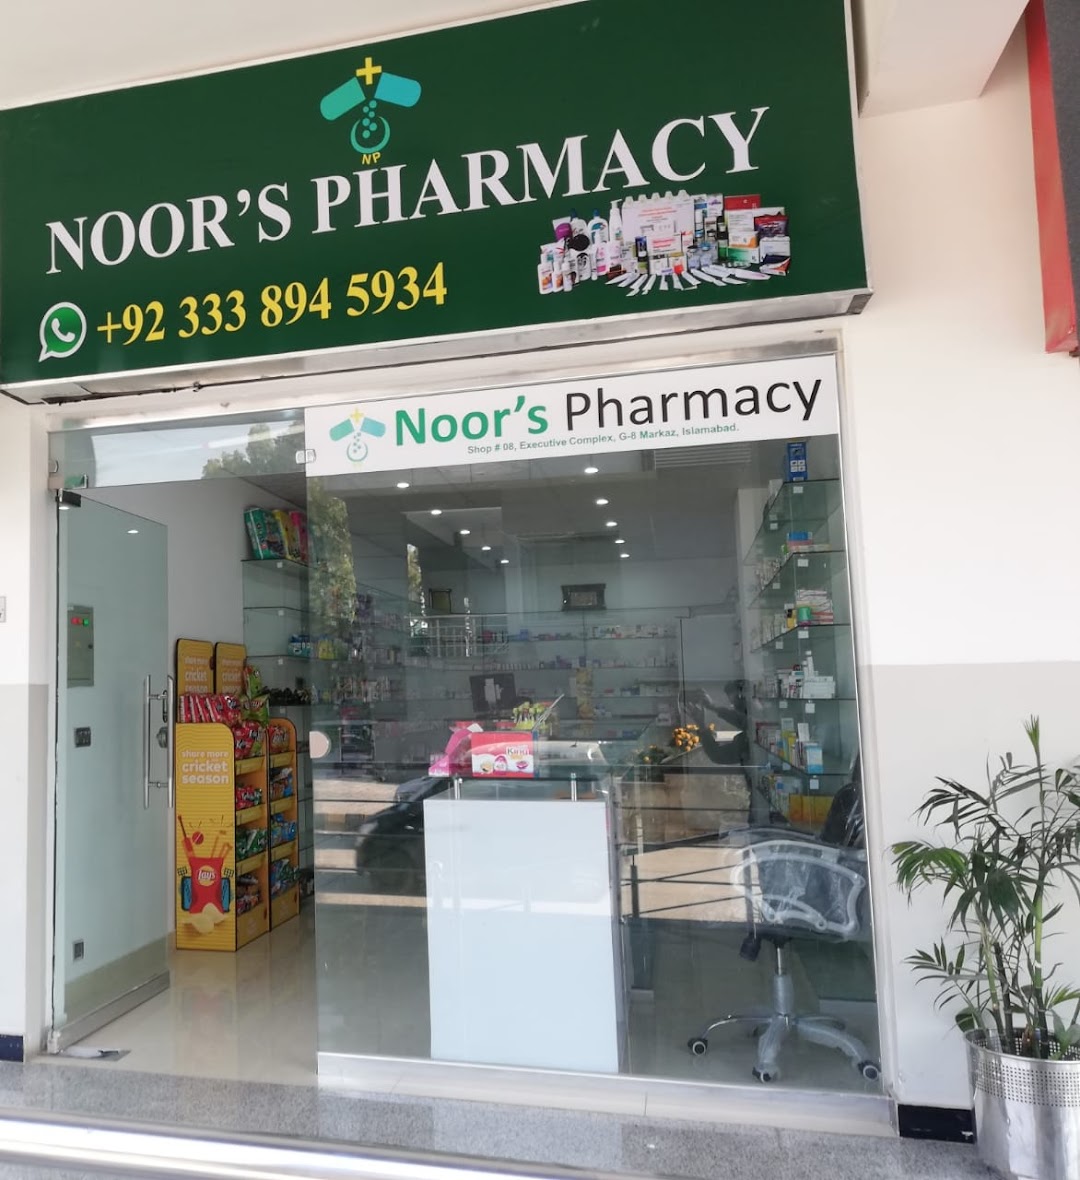 Noors Pharmacy